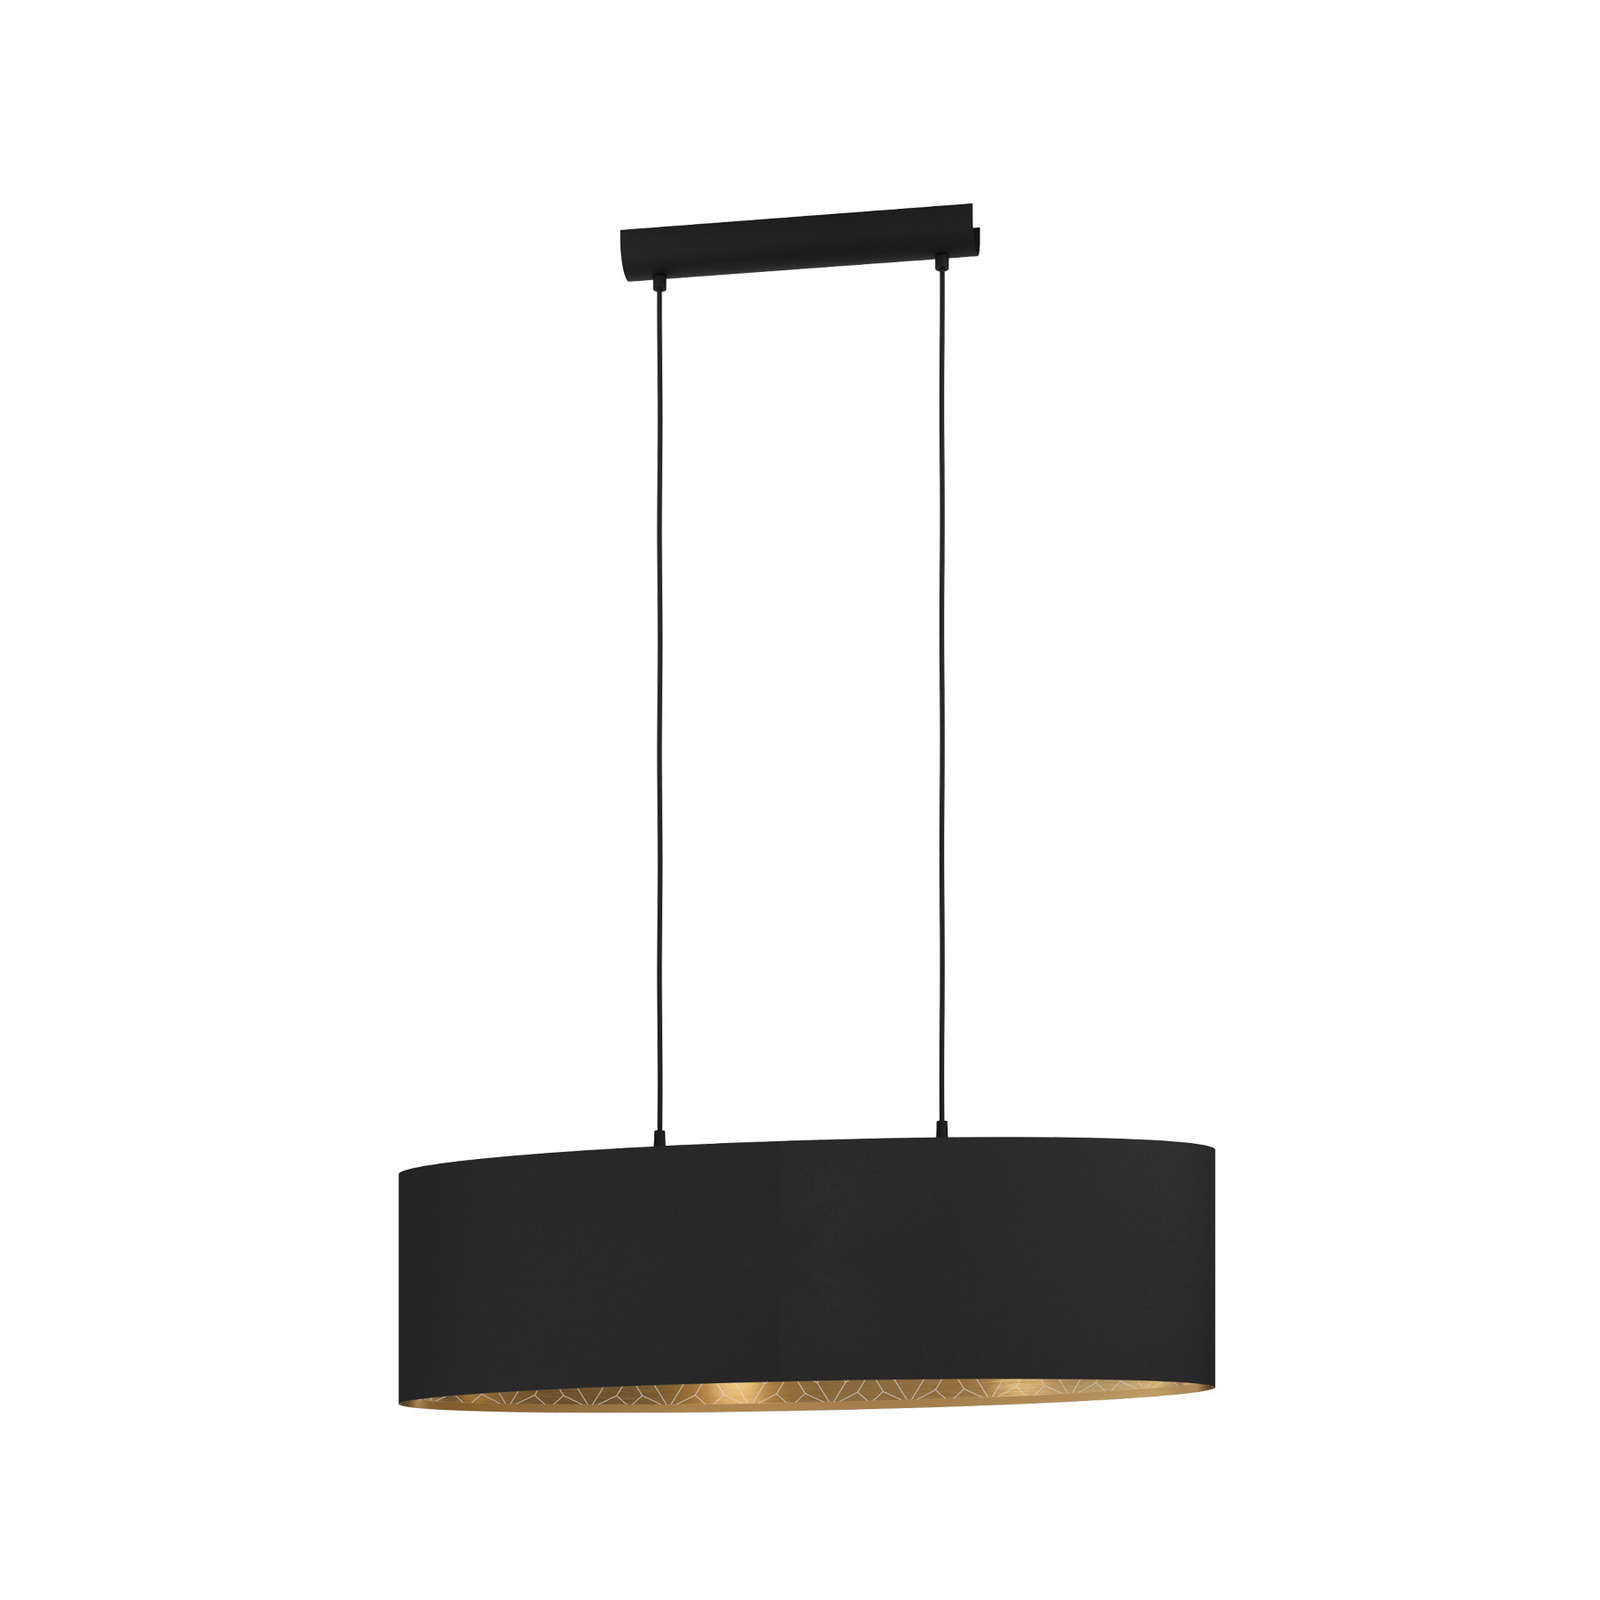 Inspectie ze winkel Hanglamp Zaragoza zwart/goud 1-lamp ovaal | Lampen24.be